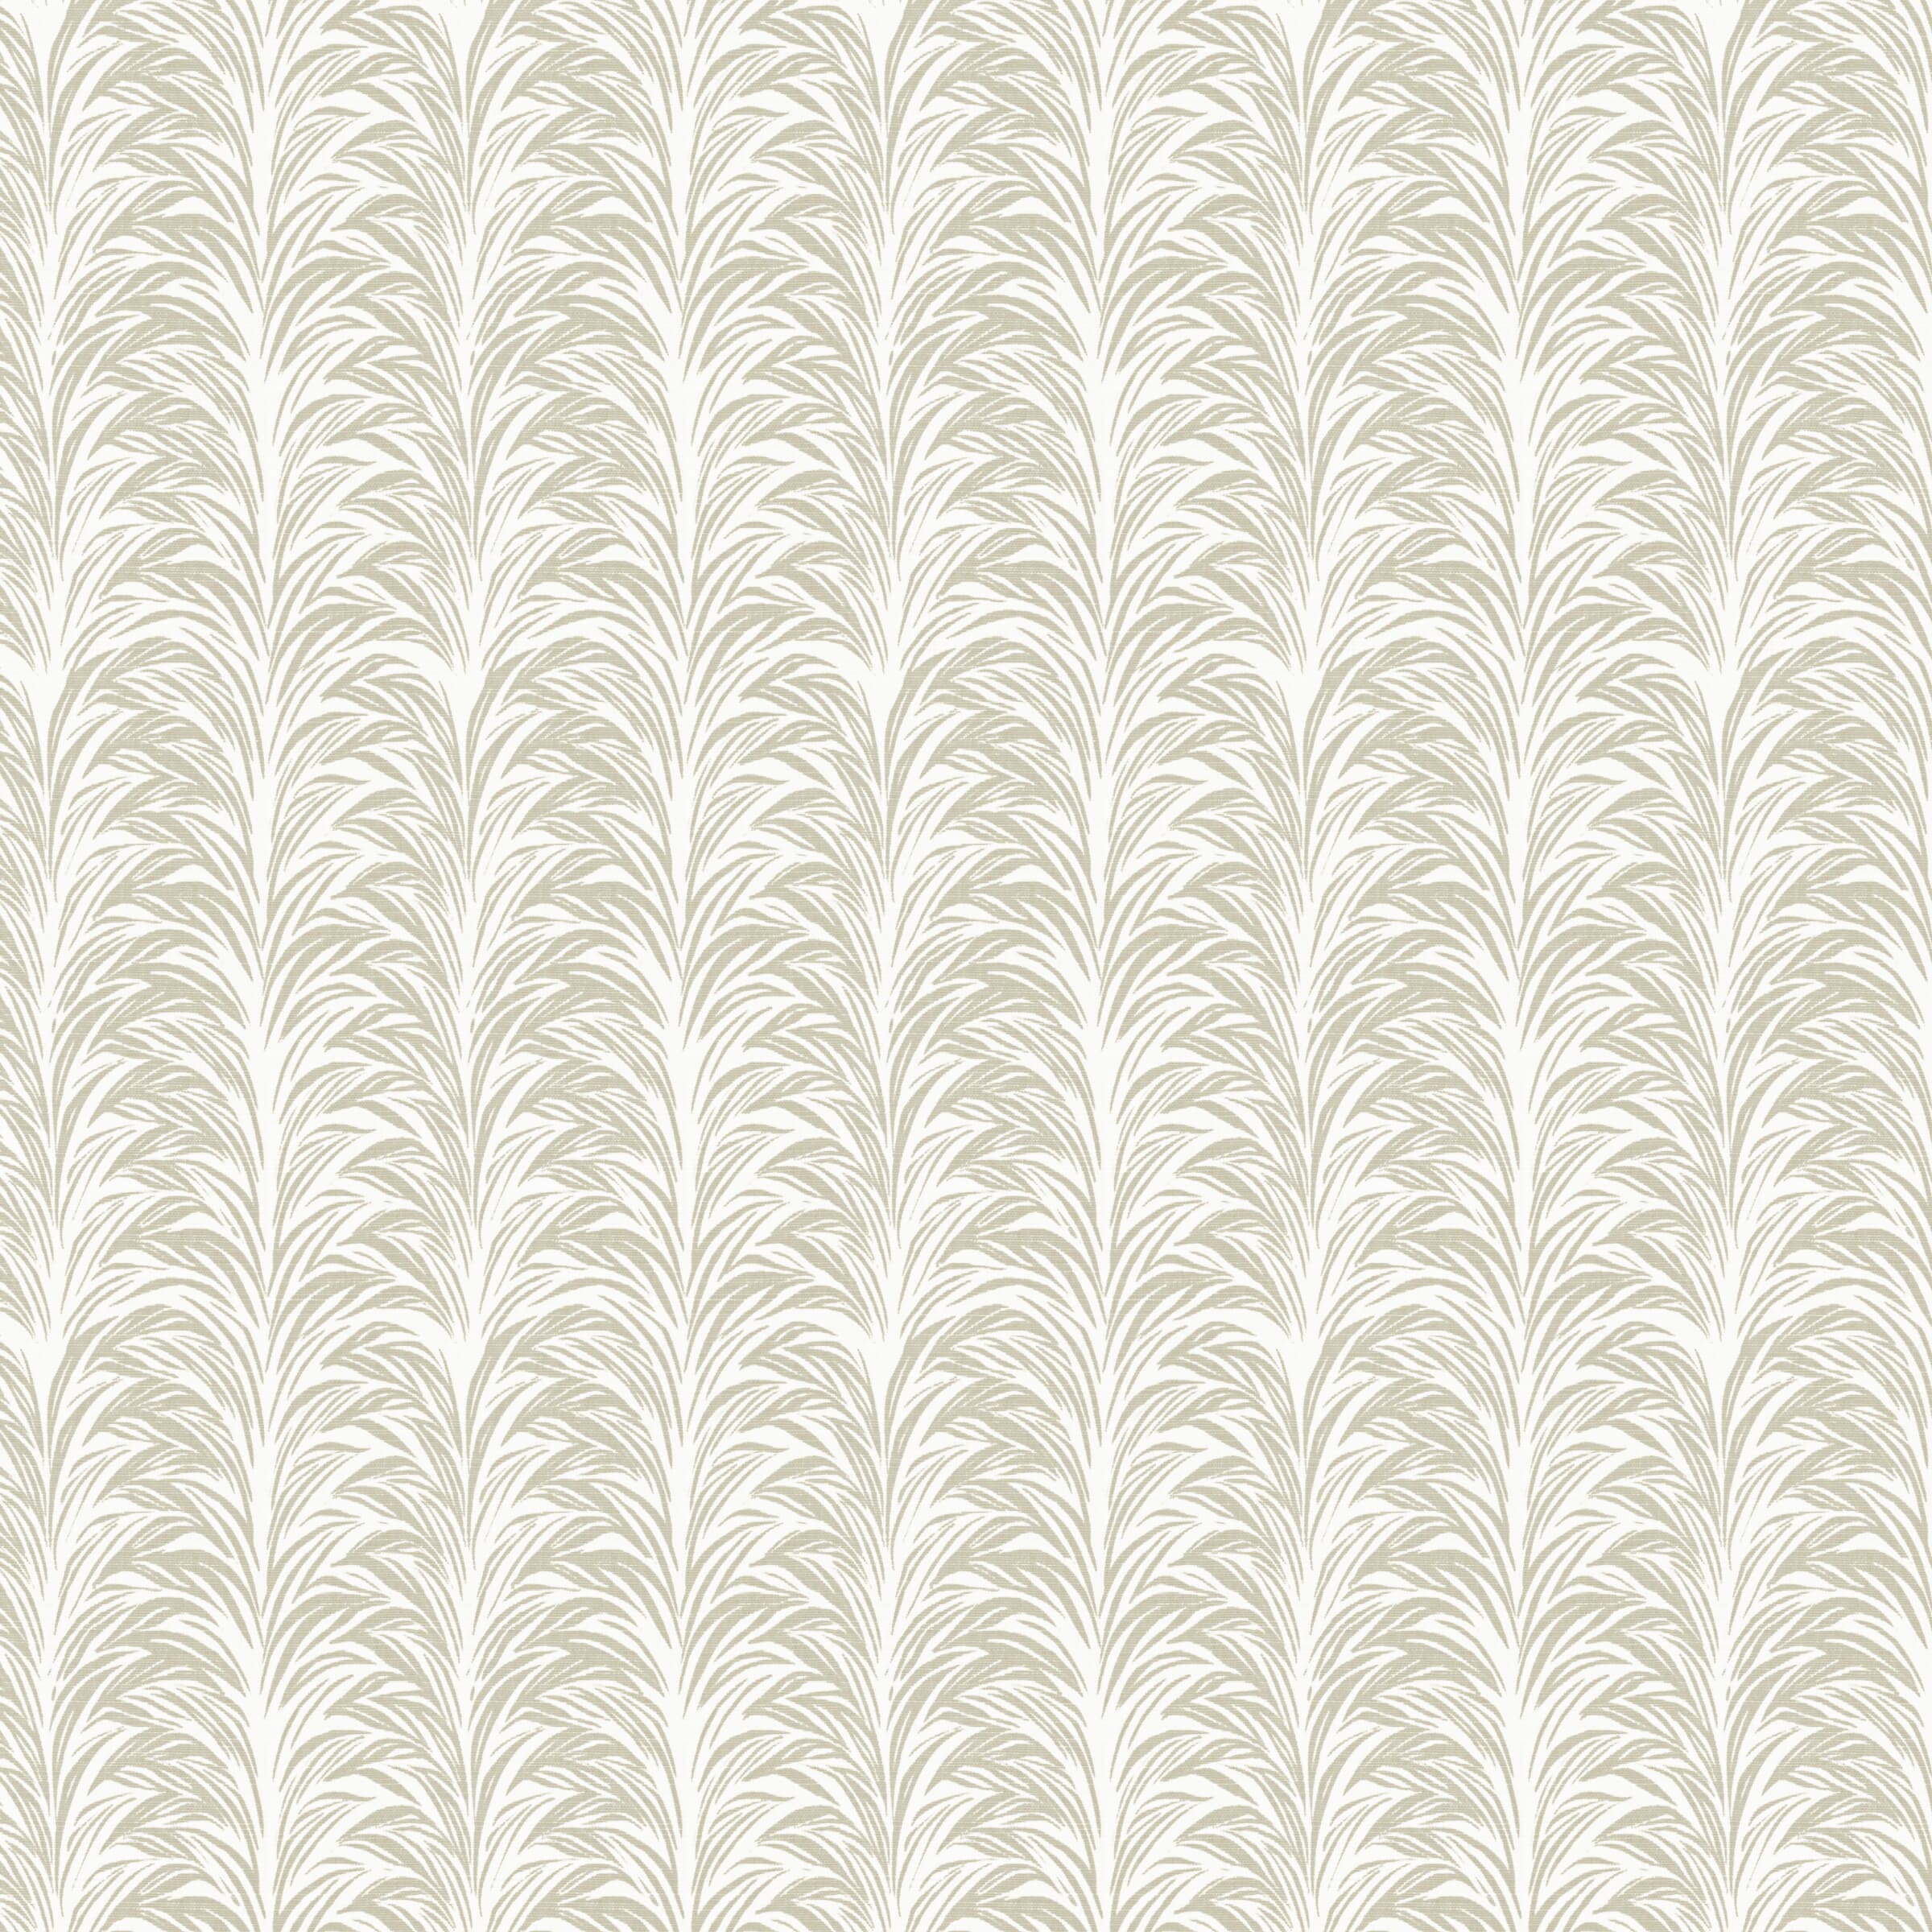 7825-3 Zebra Fern Grey by Stout Fabric